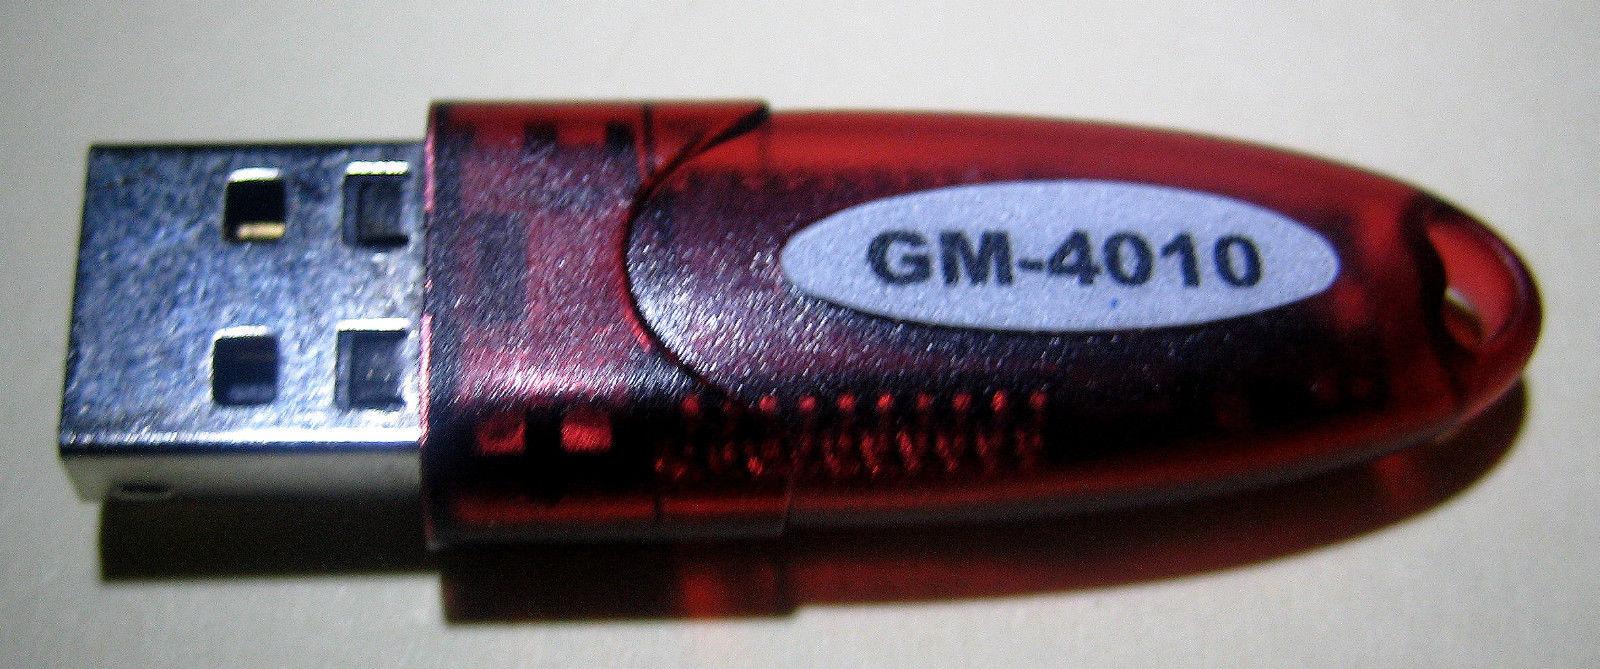 GM-4010